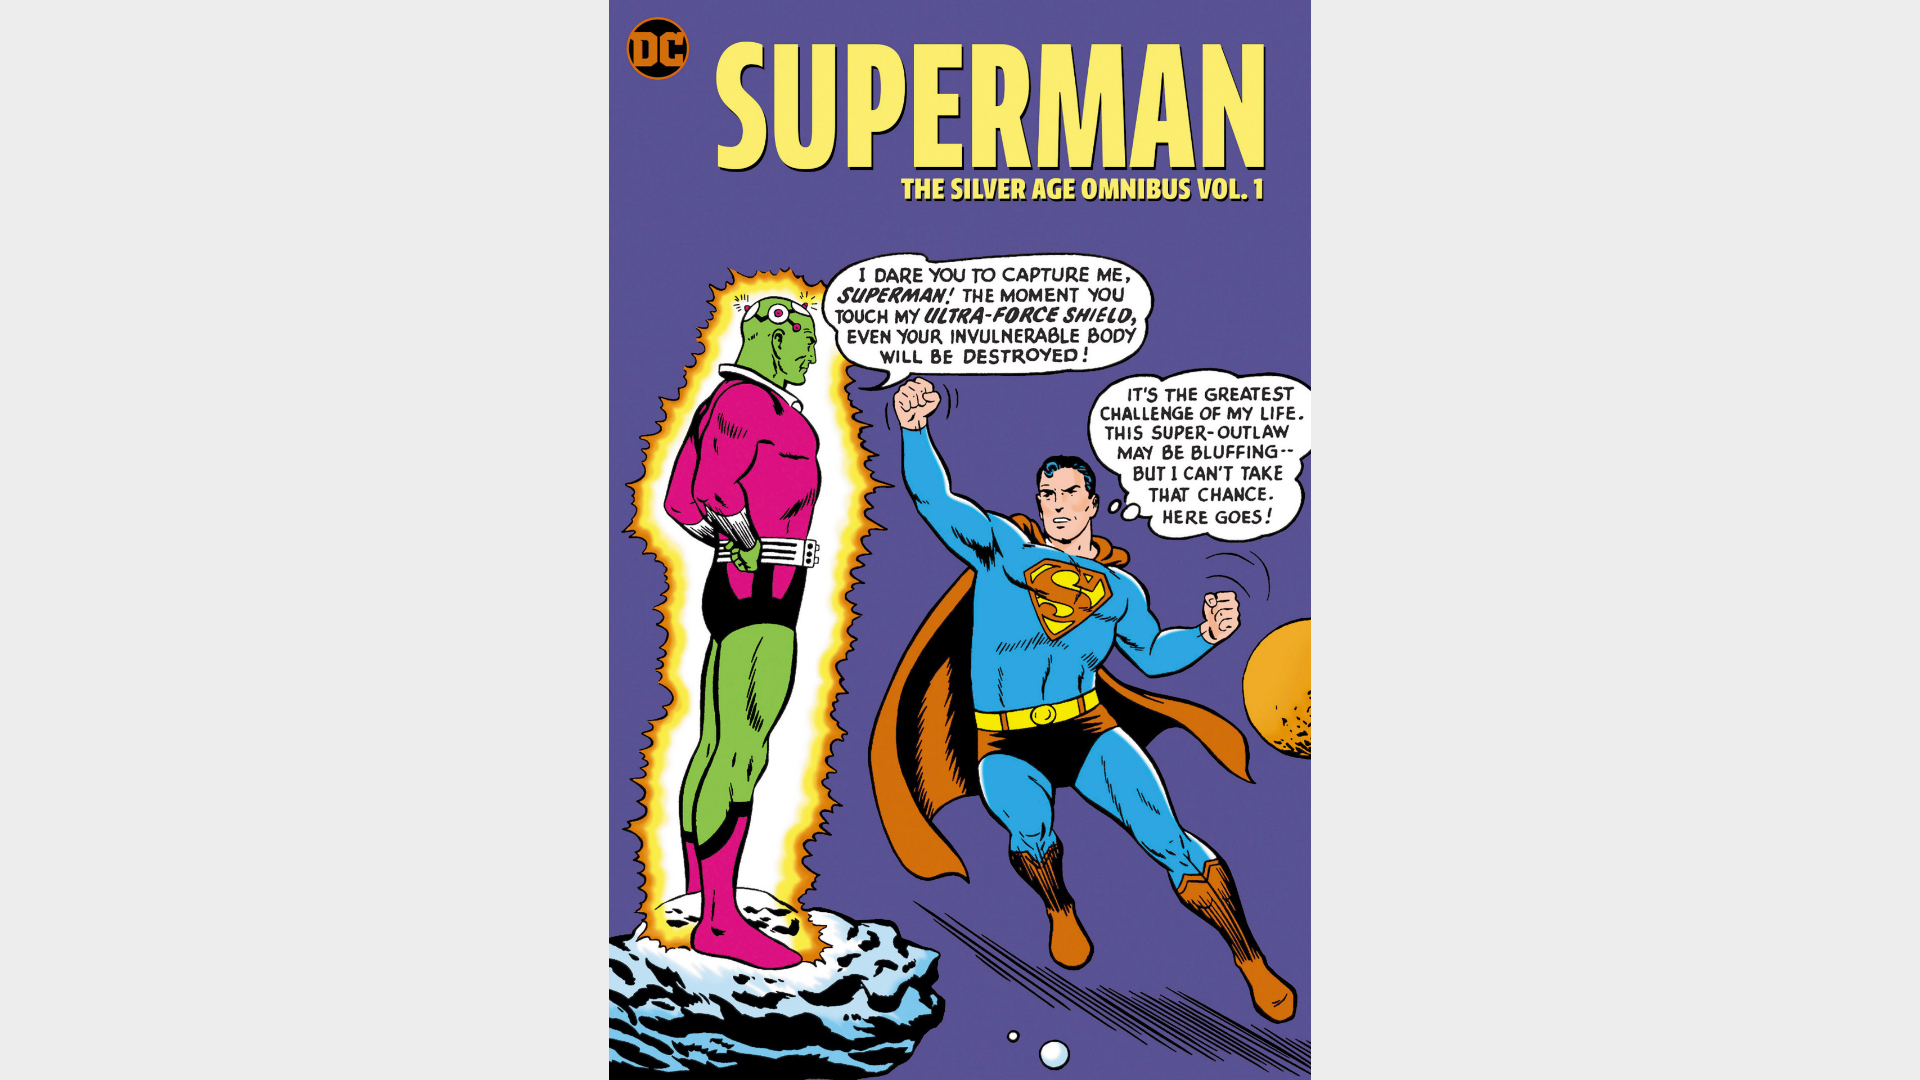 SUPERMAN: THE SILVER AGE OMNIBUS VOL. 1